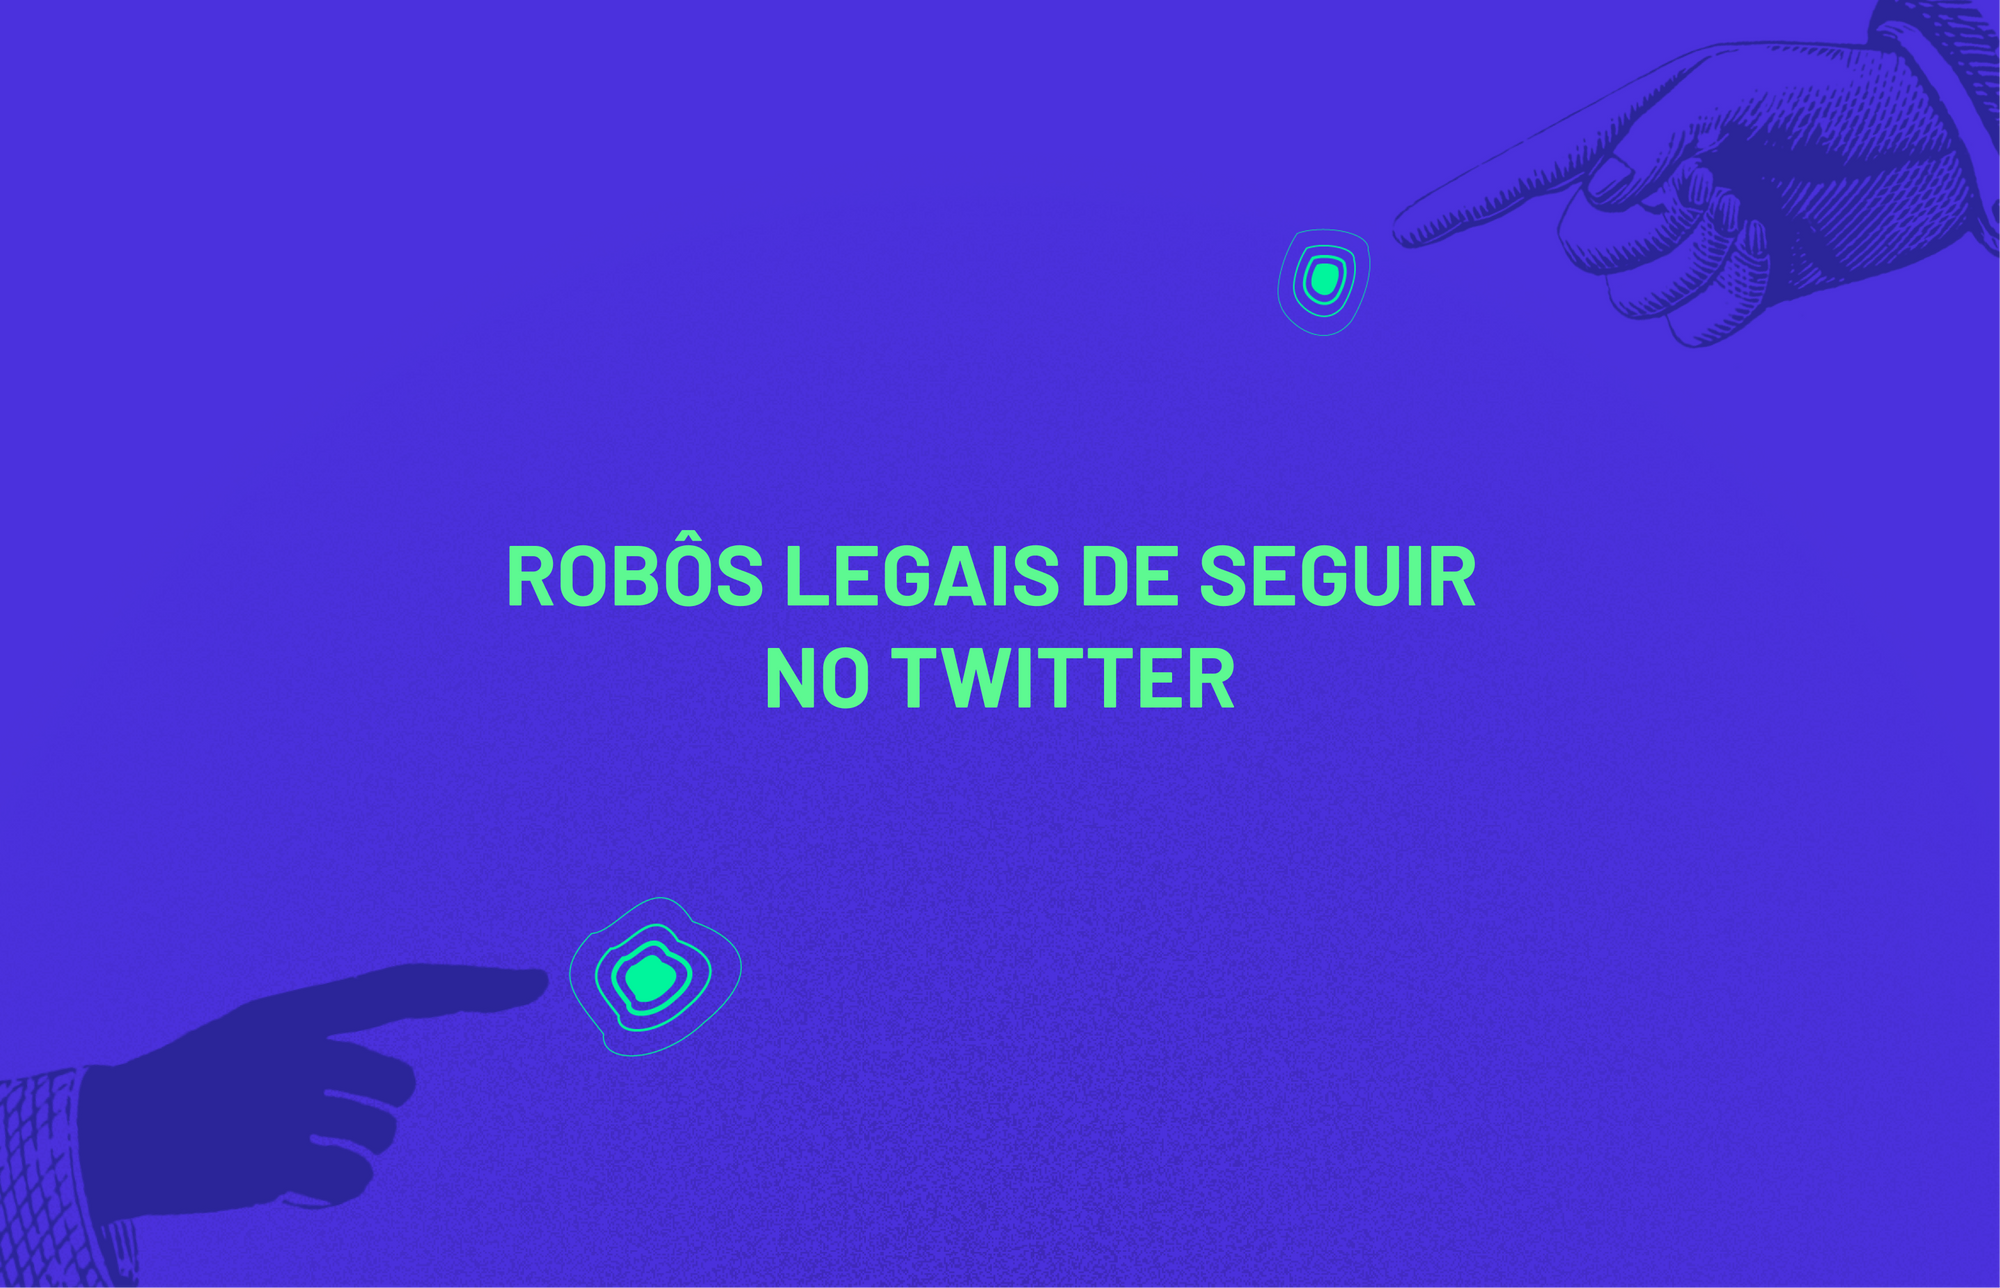 Alguns robozinhos legais de seguir no Twitter